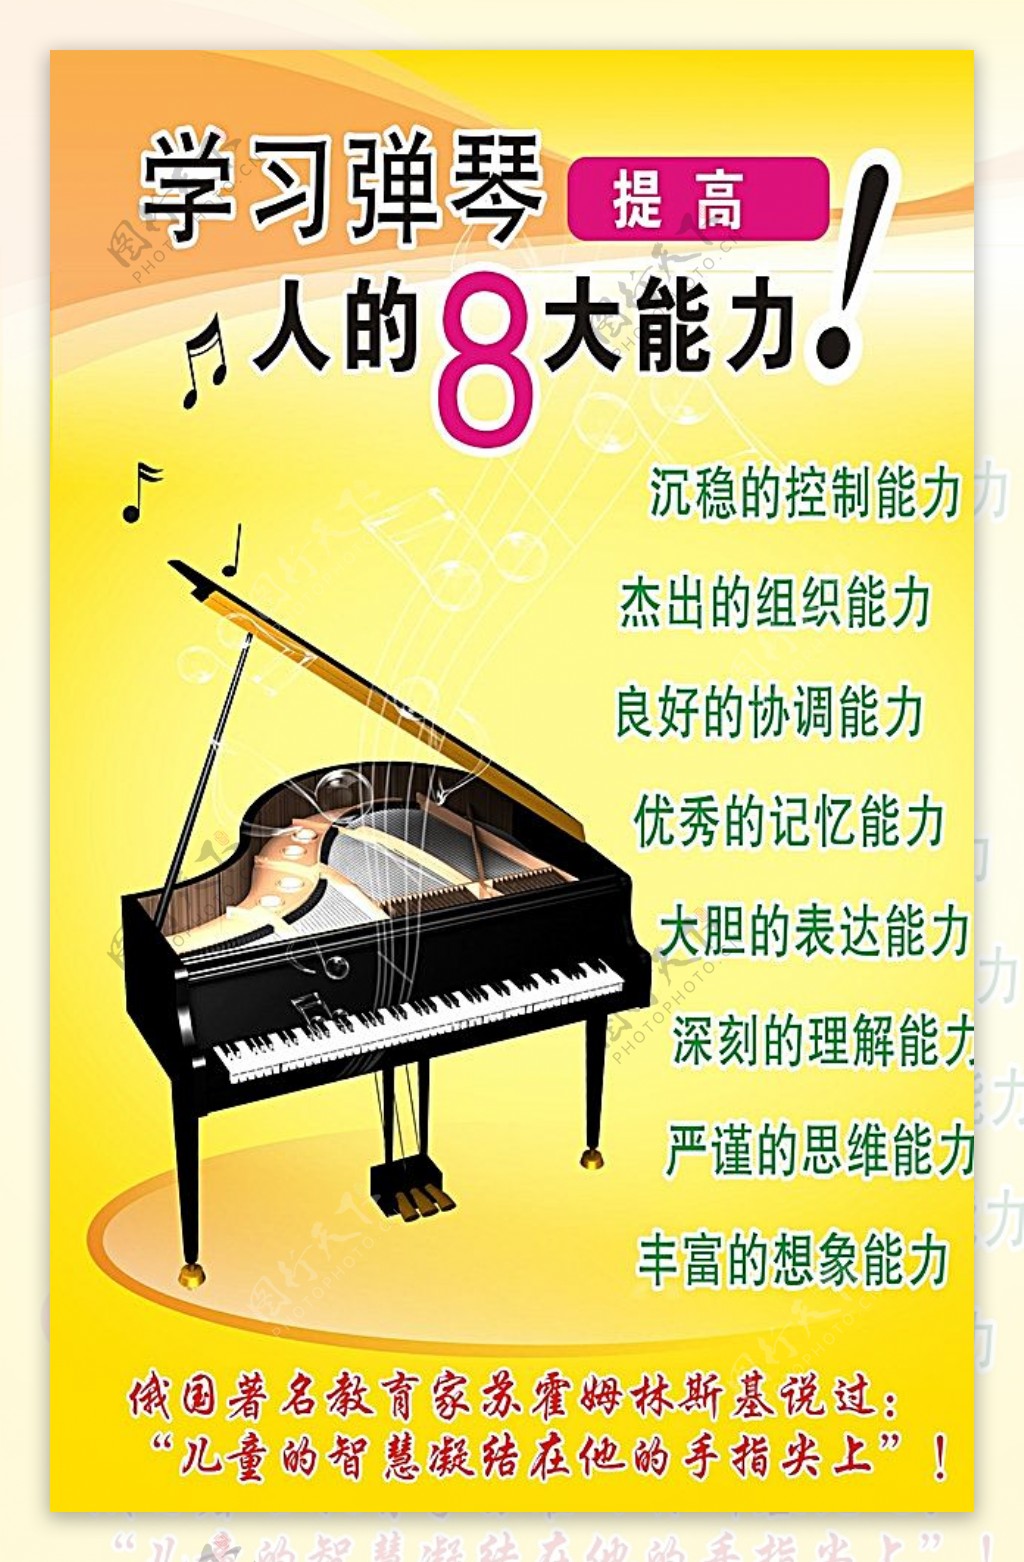 学习弹琴的好处海报图片